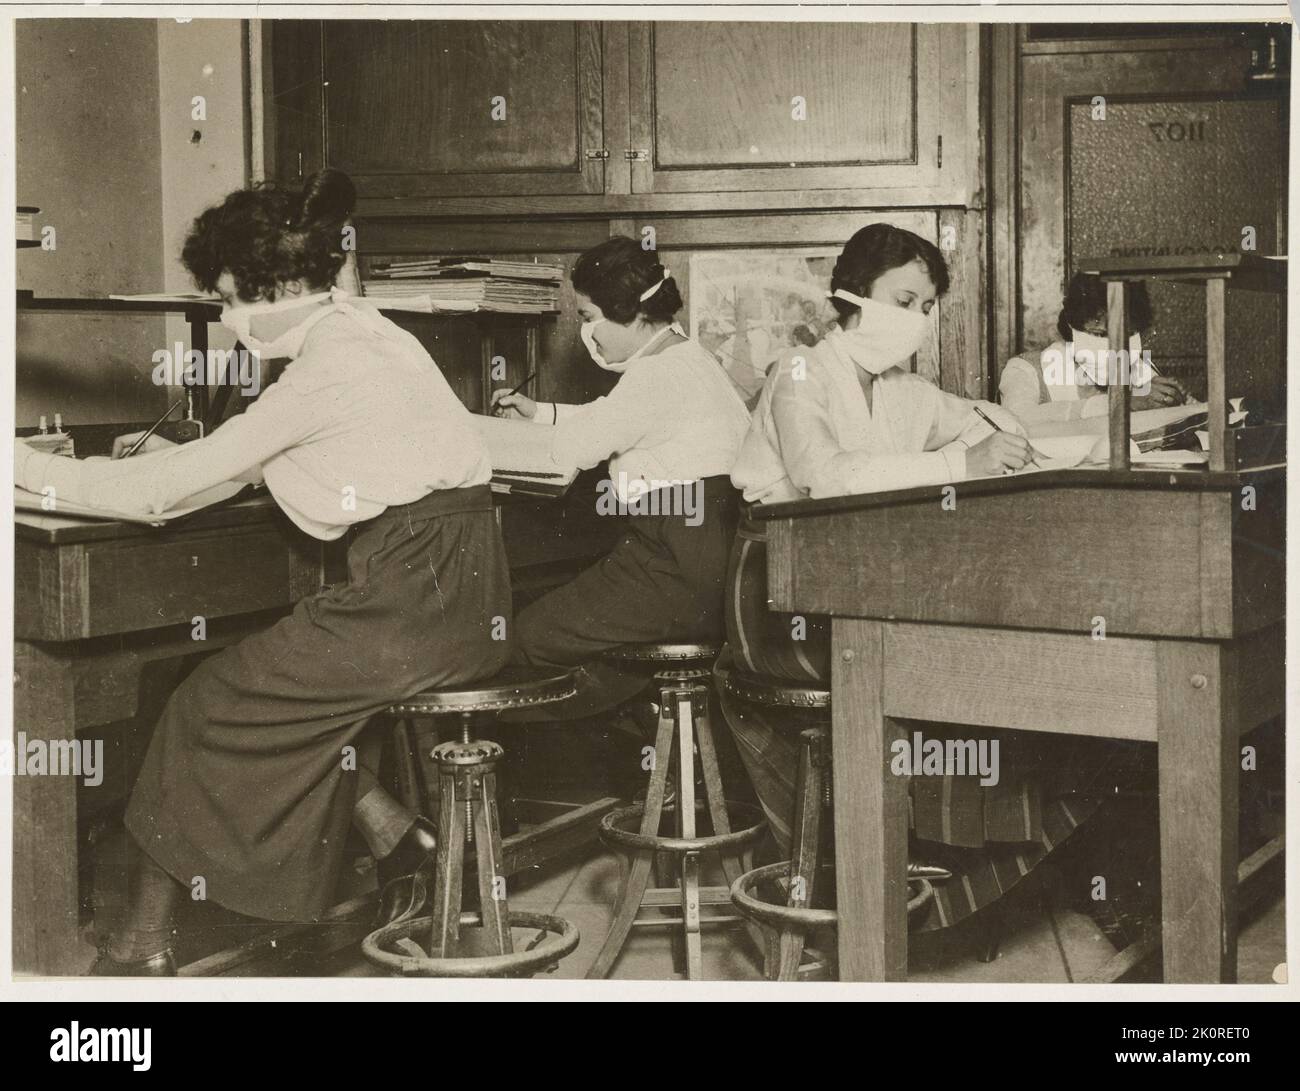 Masques pour la protection contre la grippe - commis féminins au travail avec des masques soigneusement attachés autour de leur visage pendant la pandémie de 1918, New York, NY,10/16/1918. Banque D'Images